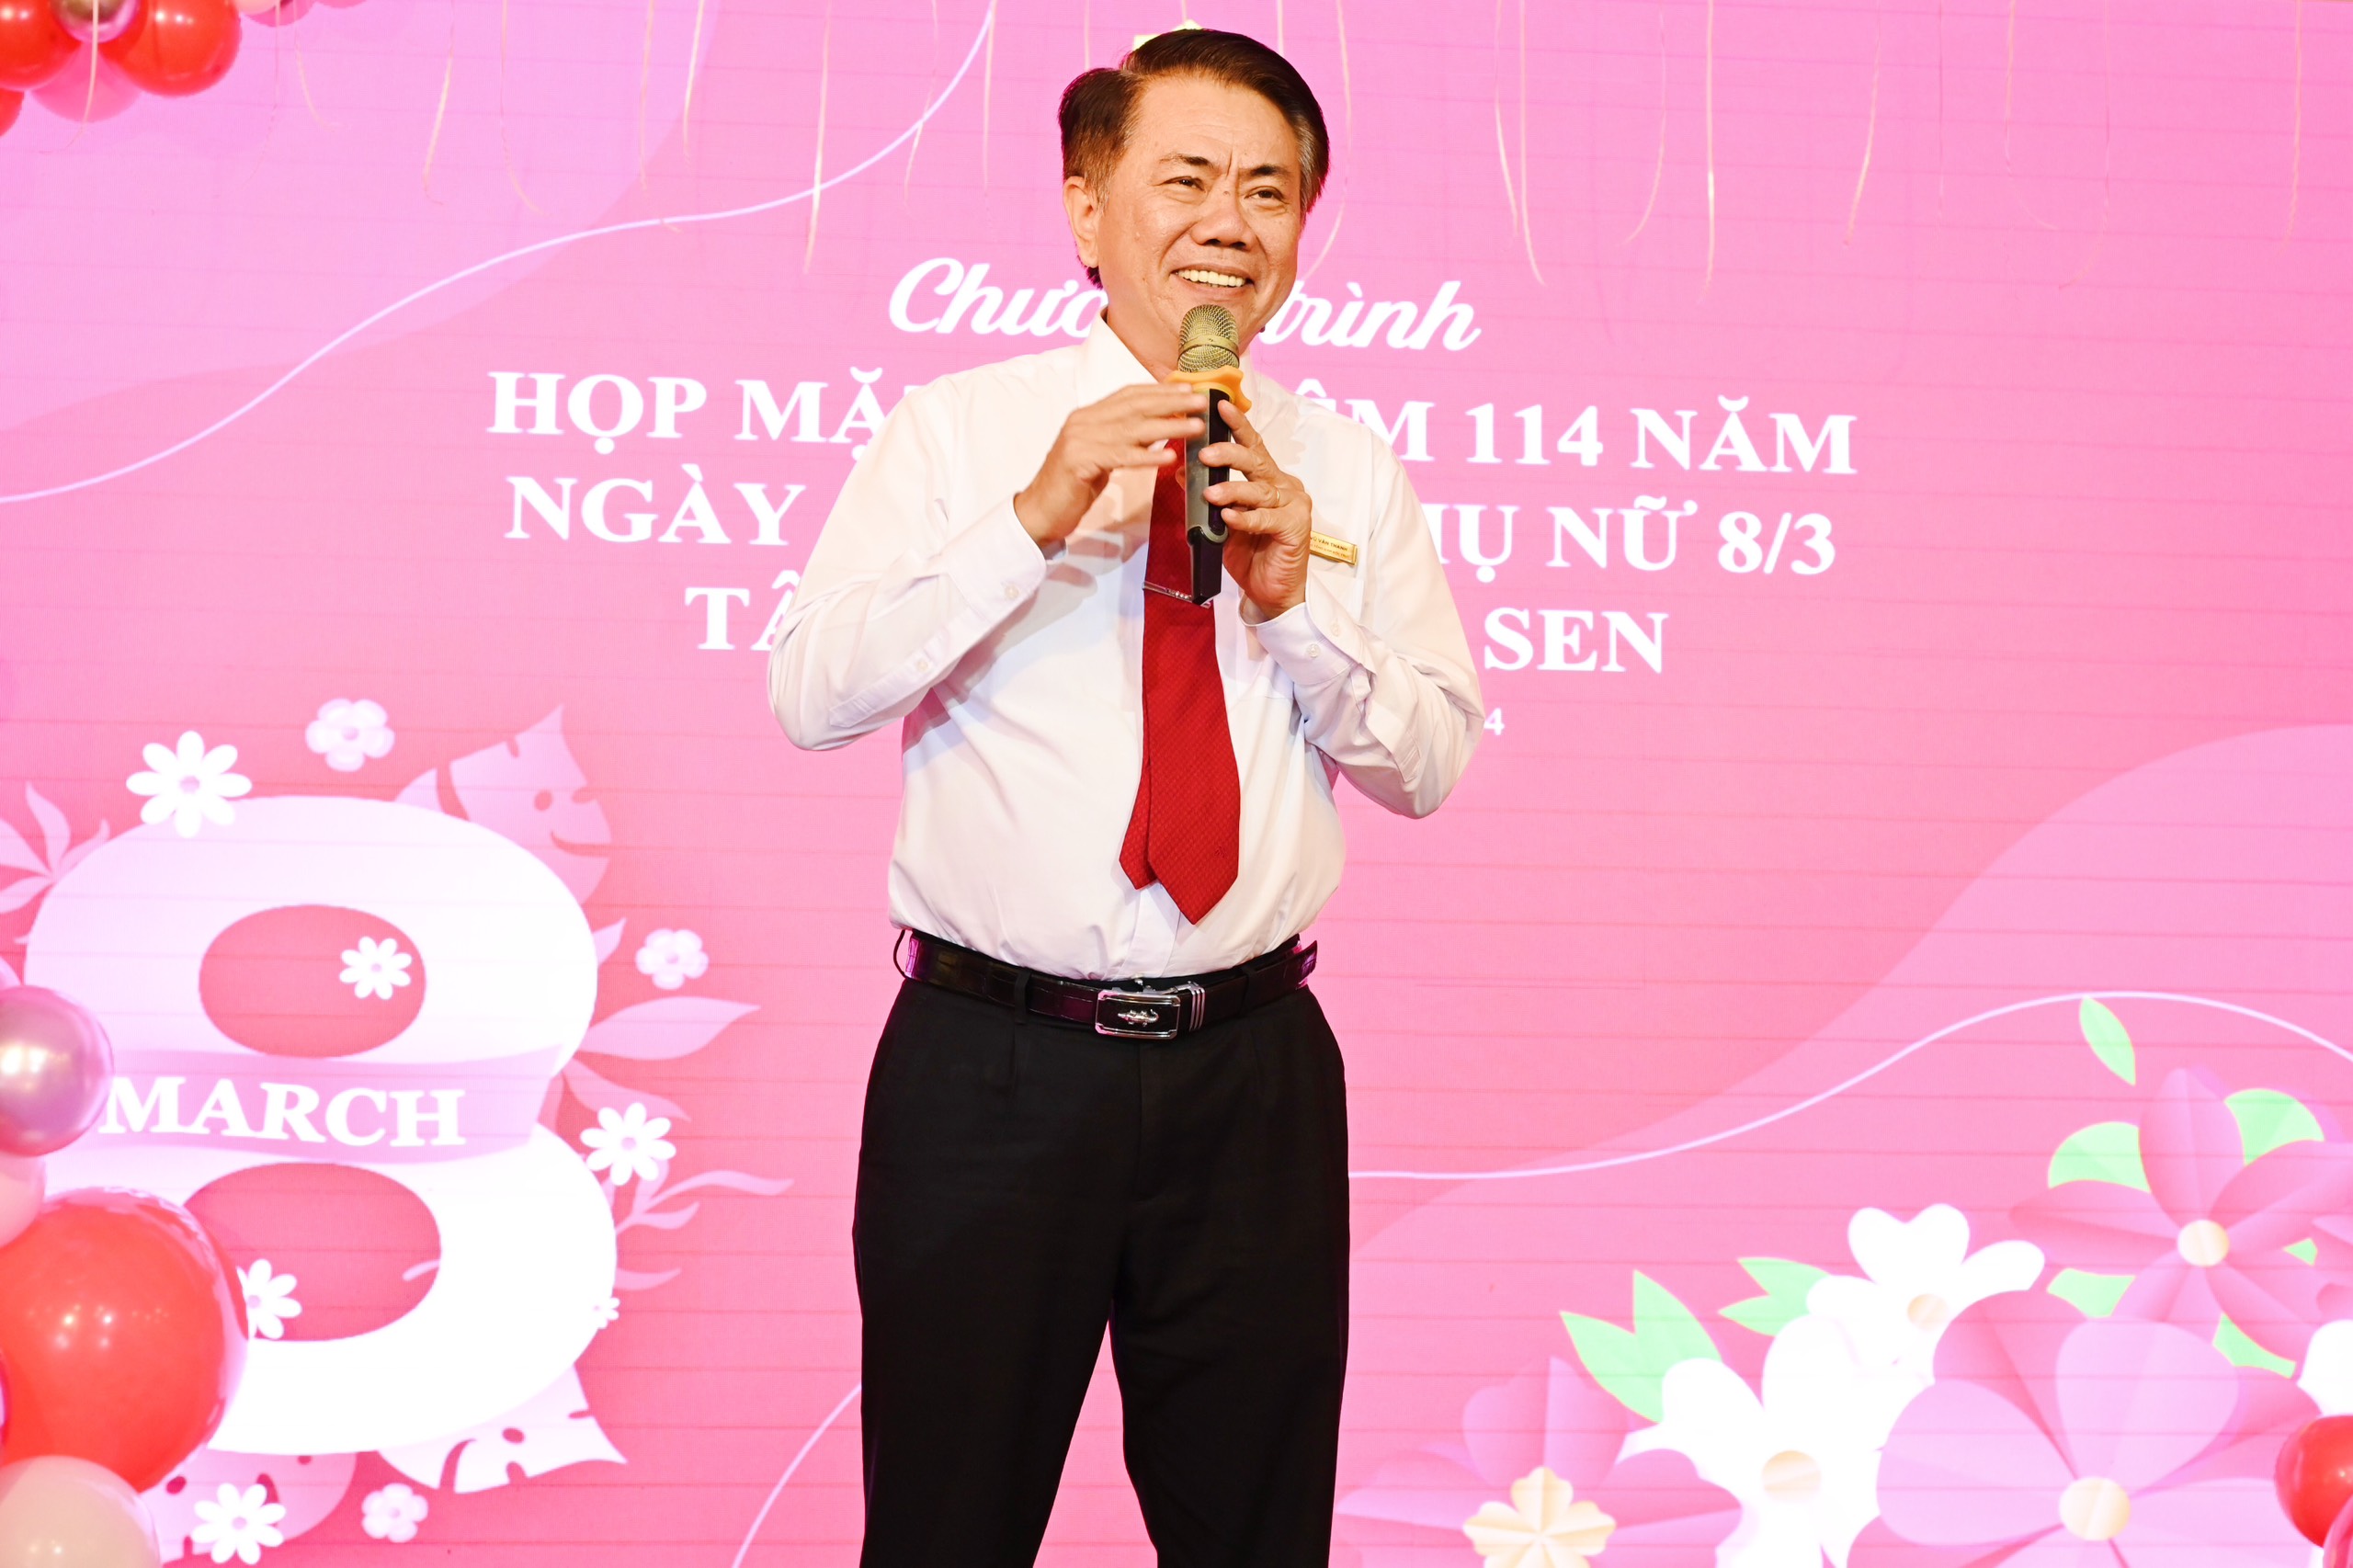 Đại diện Ban Điều hành, Ông Vũ Văn Thanh – Phó Tổng Giám Đốc Trực Tập đoàn cũng gửi gắm những lời chúc tốt đẹp đến Quý chị em nhân dịp này